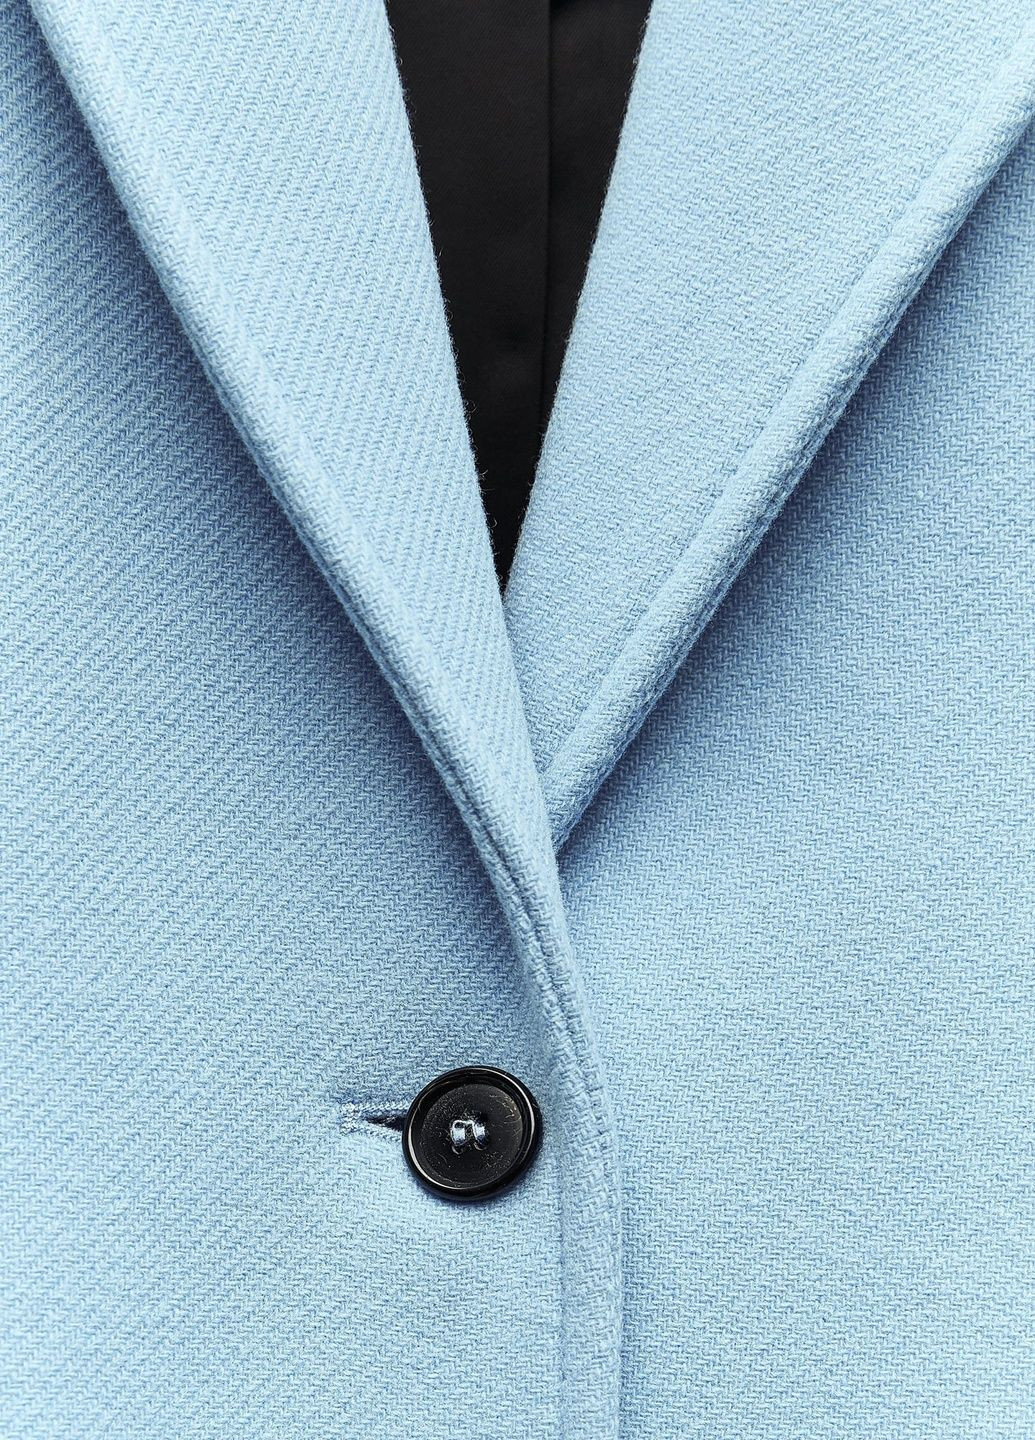 Голубое демисезонное Пальто Zara